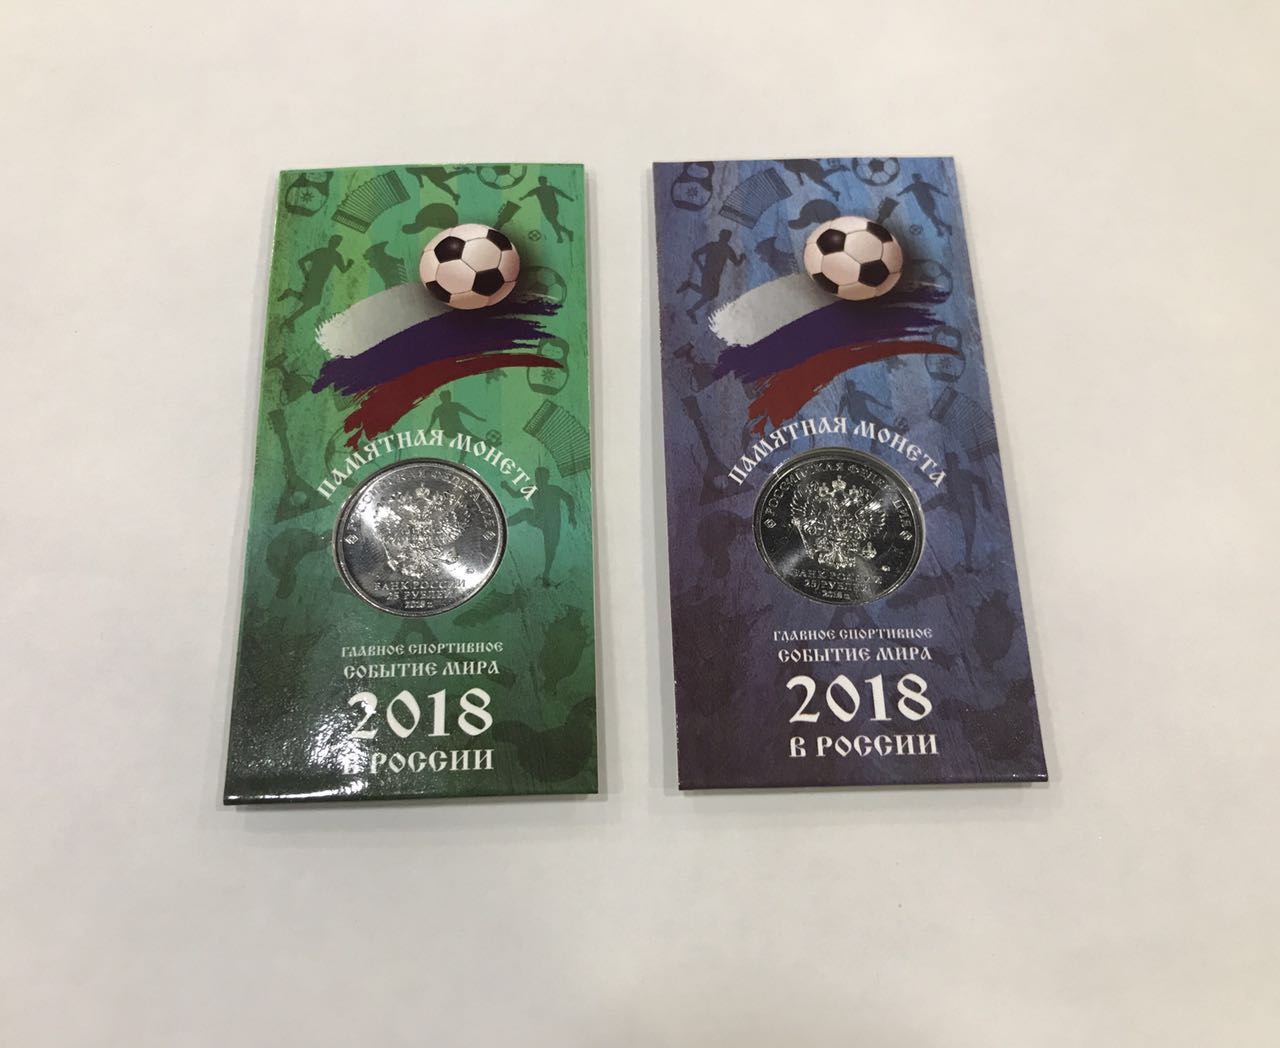 俄罗斯2018年世界杯足球赛25卢布纪念币,蓝、